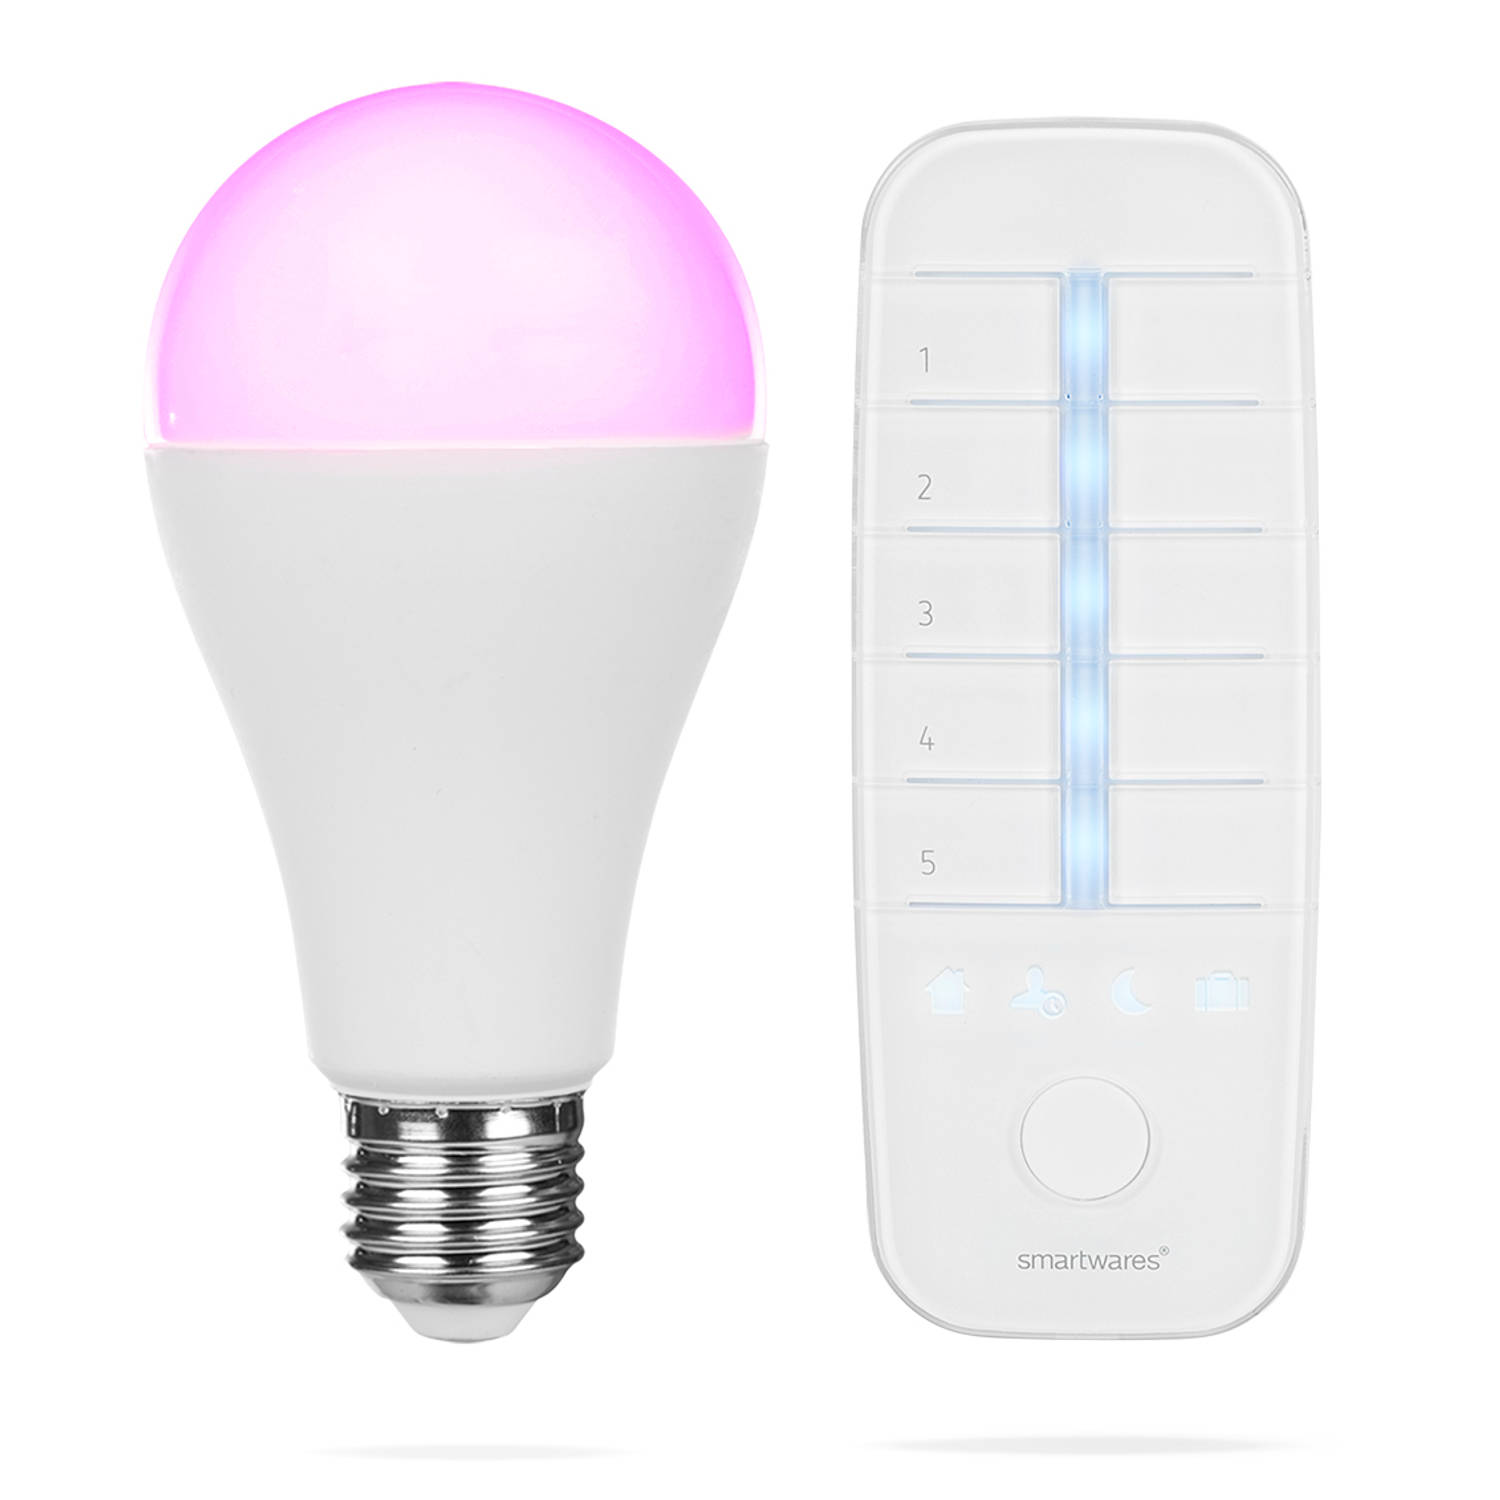 Smartwares slimme E27 kleurlamp met afstandsbediening - PRO Series